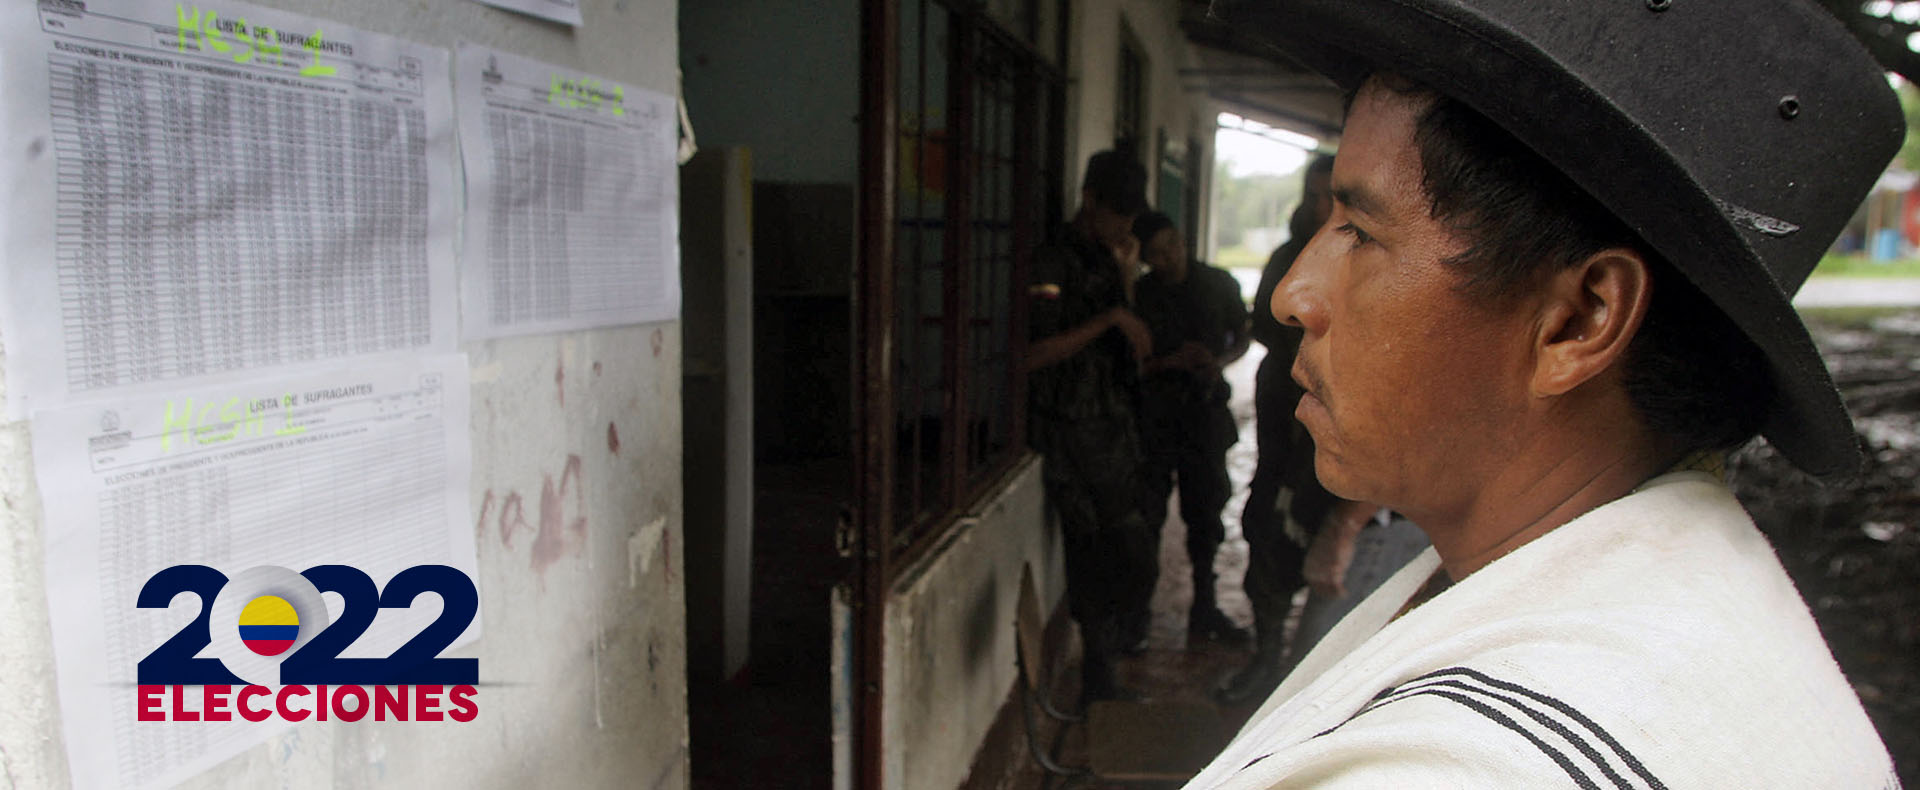 Campesino mira lista de cédulas en puesto de votación 